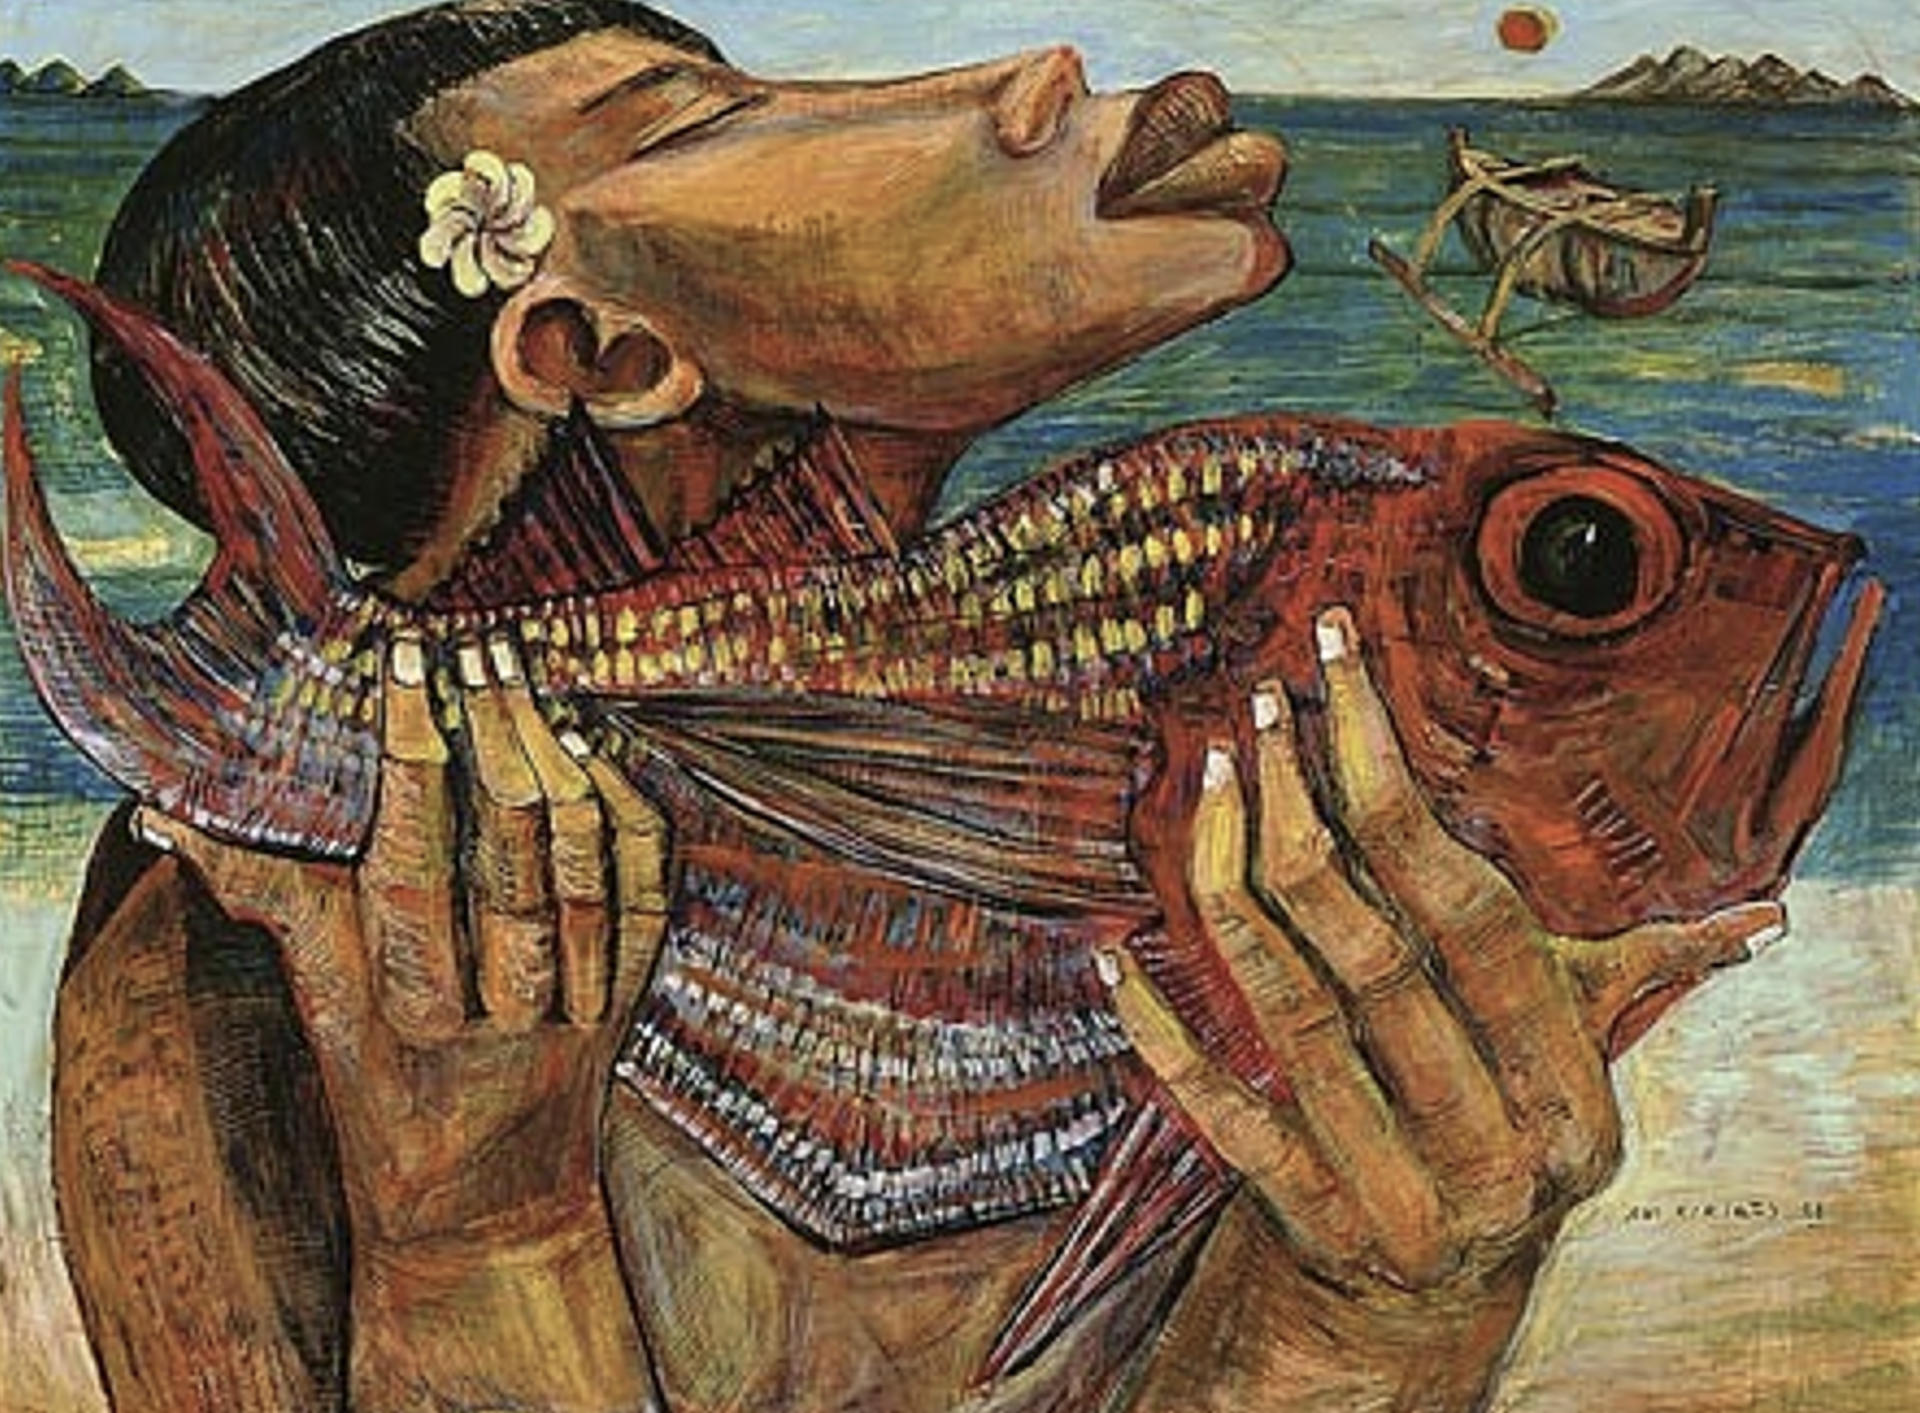 Fish Catch by Avi Kiriaty